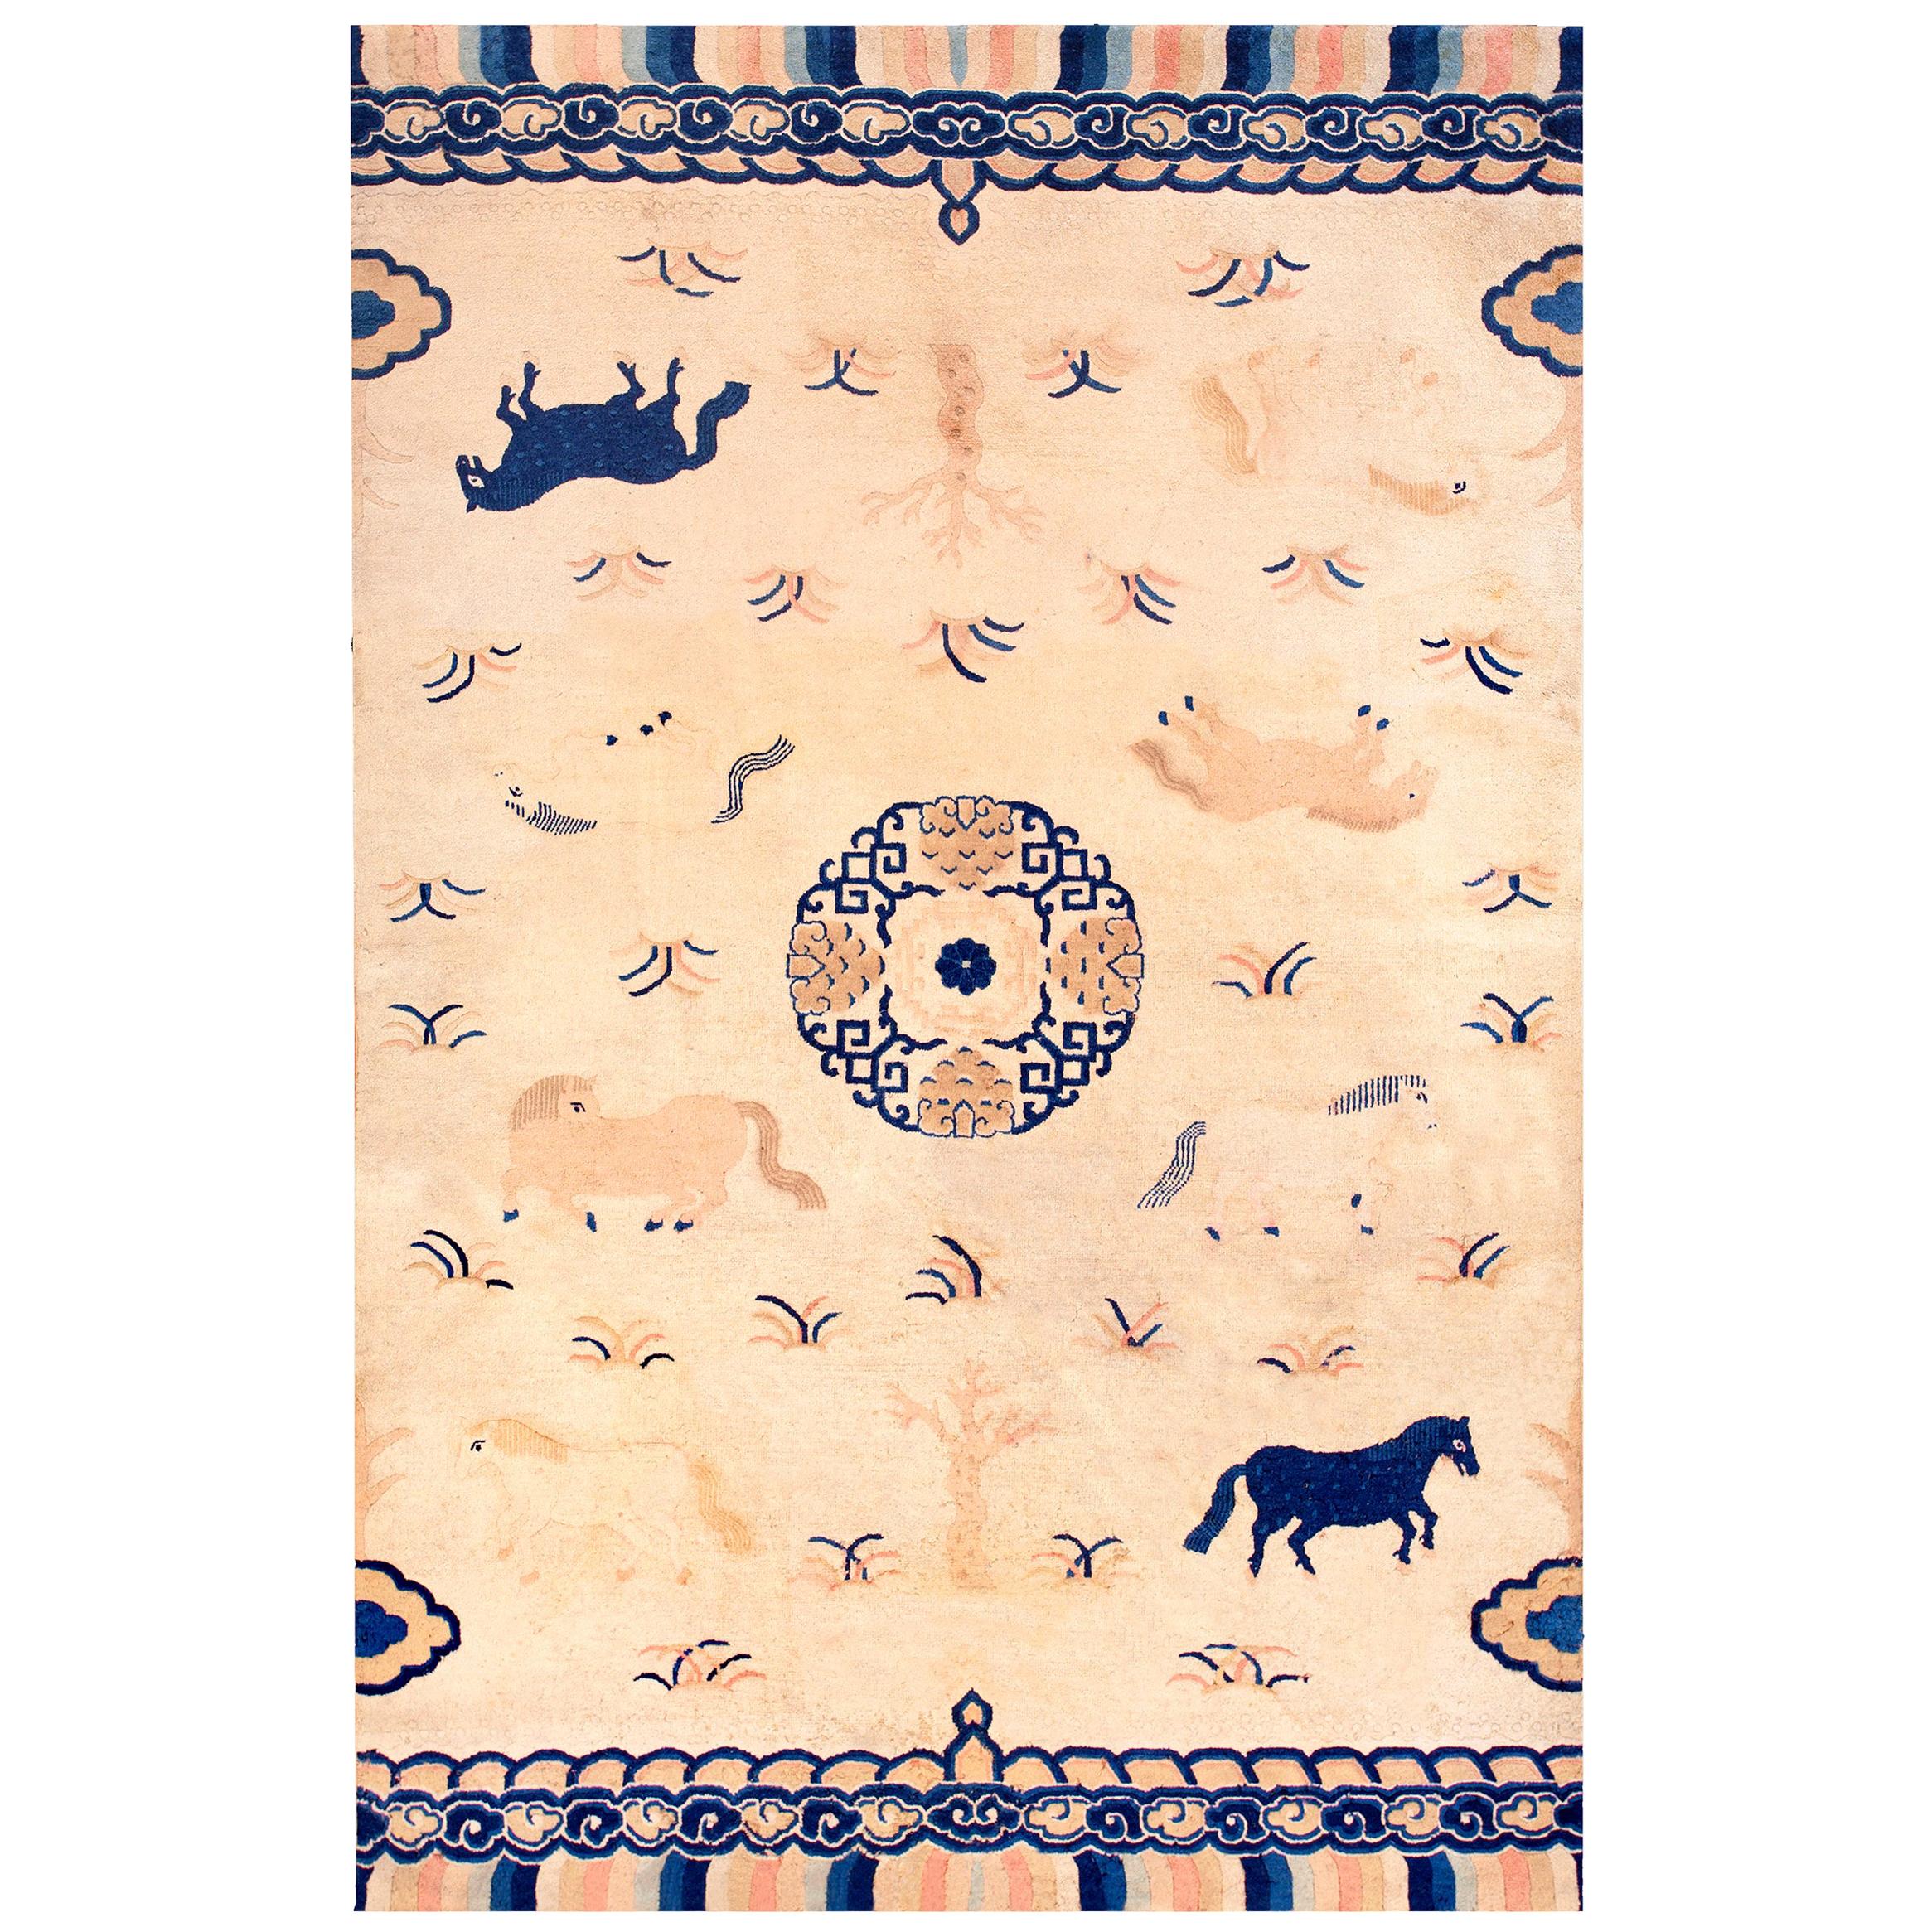 Chinesischer Peking-Teppich des frühen 20. Jahrhunderts ( 5'2" x 7'10" - 158 x 239")